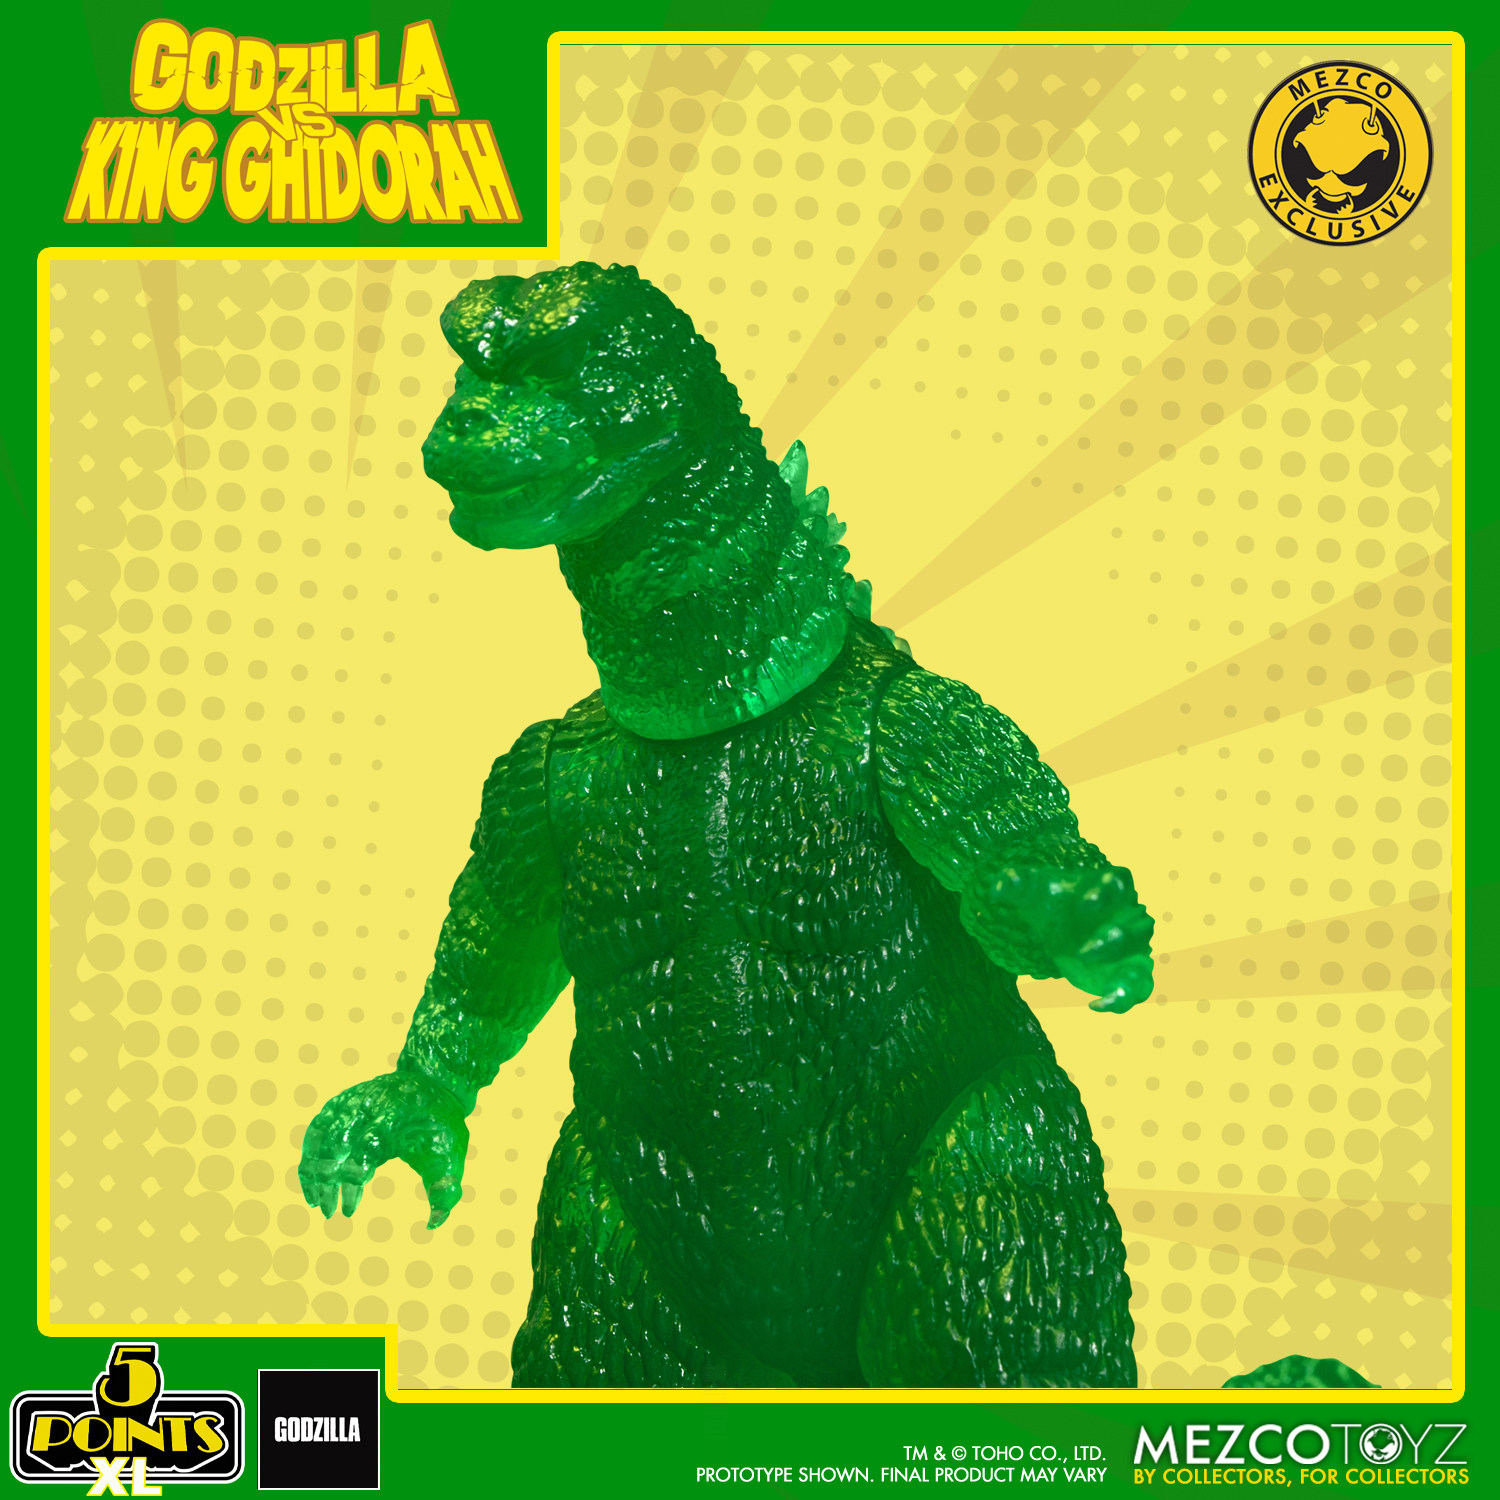 Godzilla Vs. King Ghidorah – Light in the Attic